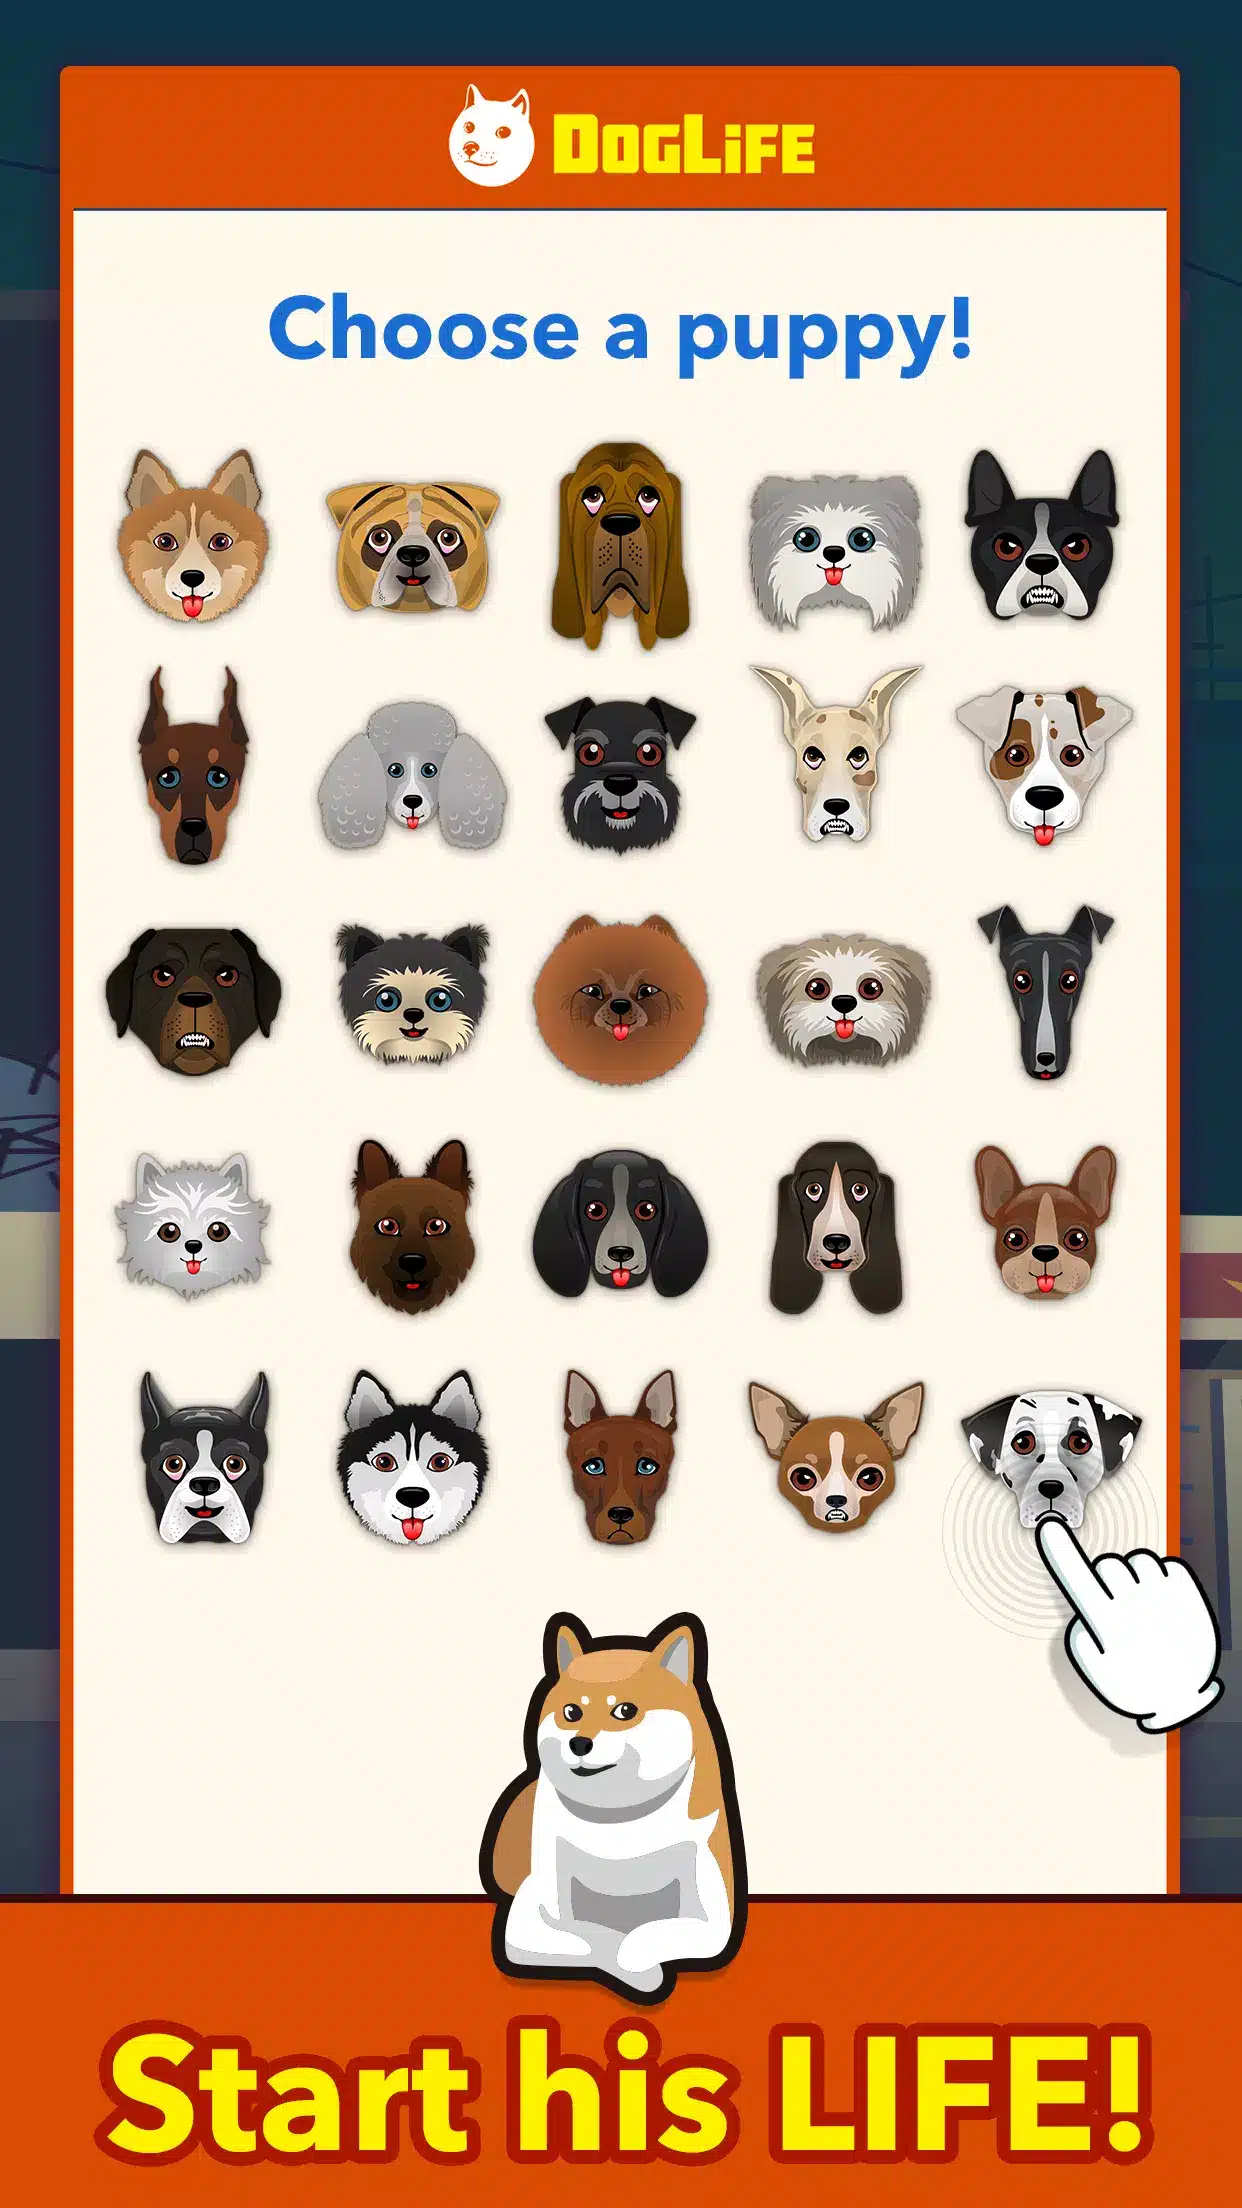 BitLife Dogs – DogLife Image 1